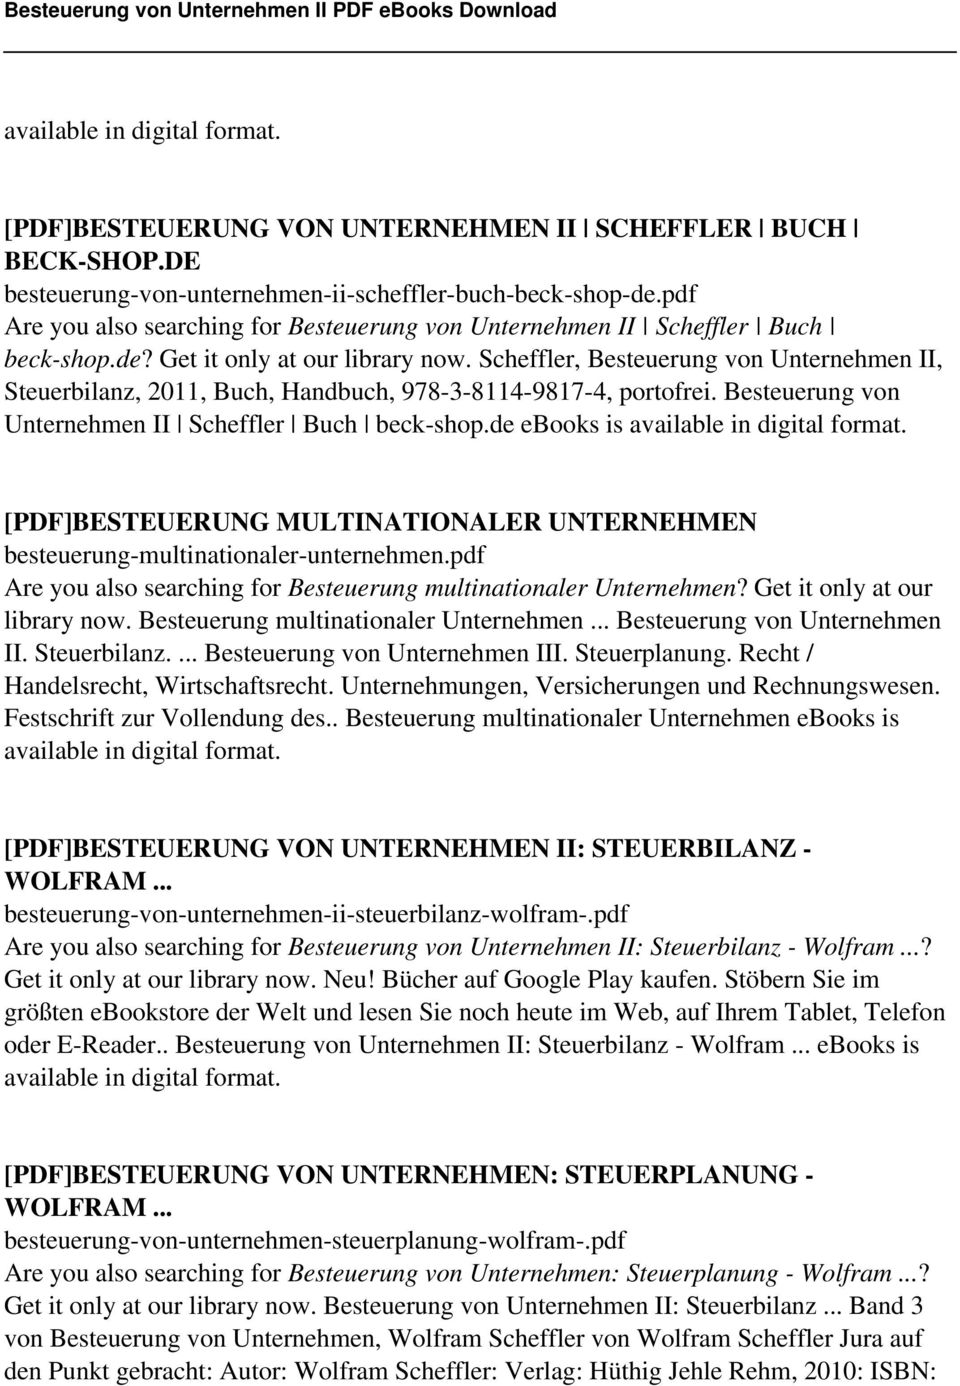 Scheffler, Besteuerung von Unternehmen II, Steuerbilanz, 2011, Buch, Handbuch, 978-3-8114-9817-4, portofrei. Besteuerung von Unternehmen II Scheffler Buch beck-shop.